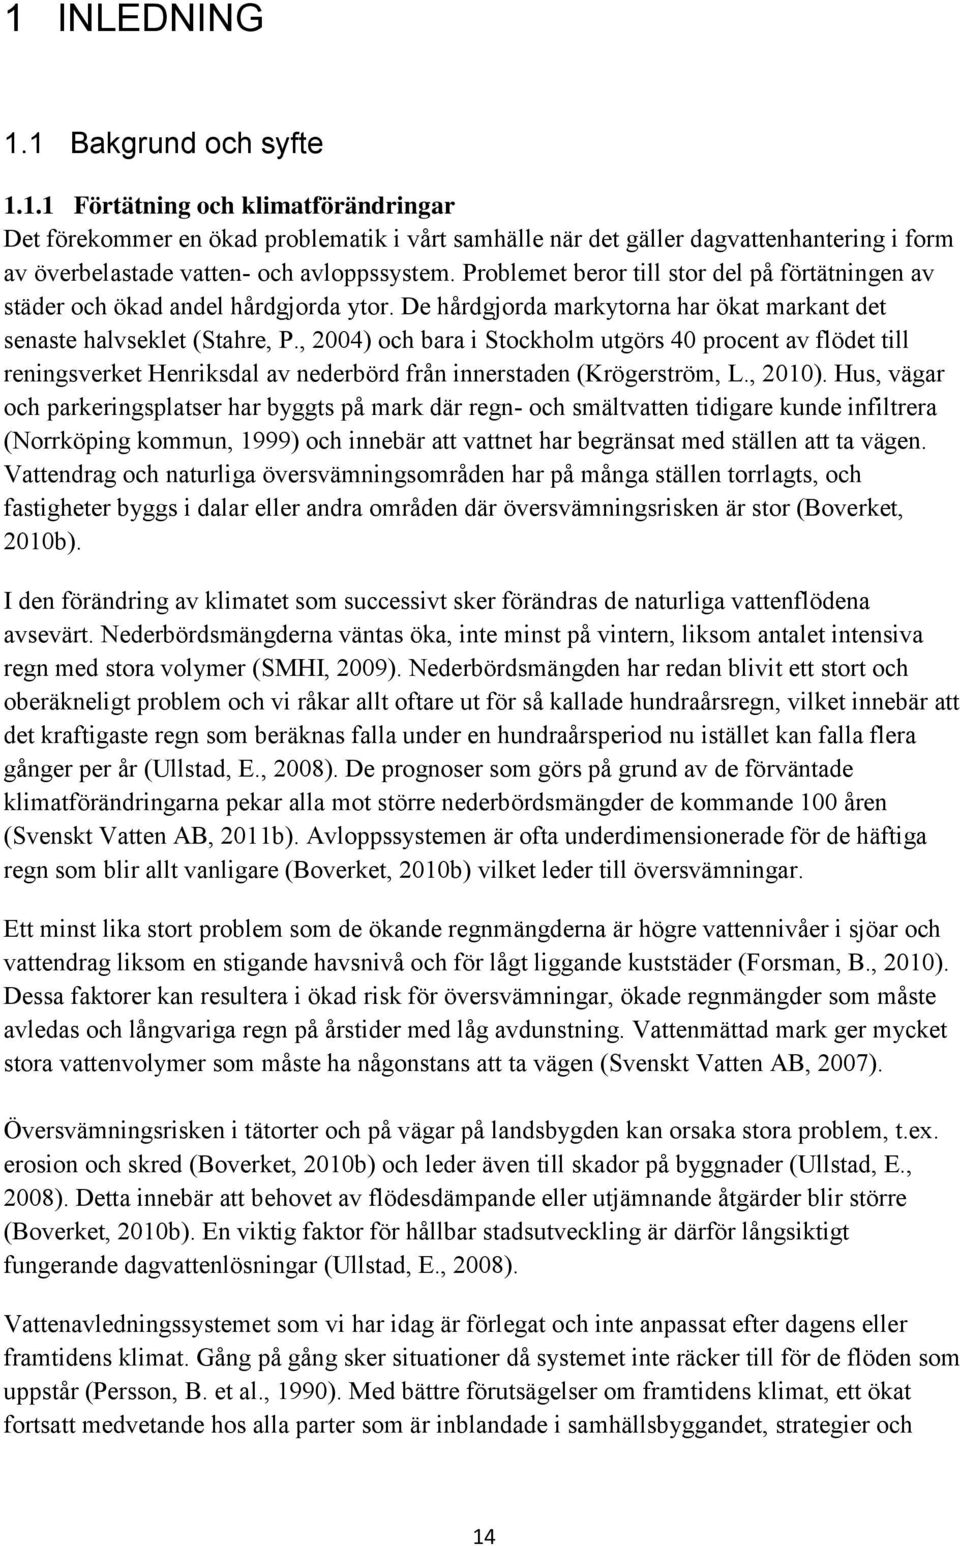 , 2004) och bara i Stockholm utgörs 40 procent av flödet till reningsverket Henriksdal av nederbörd från innerstaden (Krögerström, L., 2010).